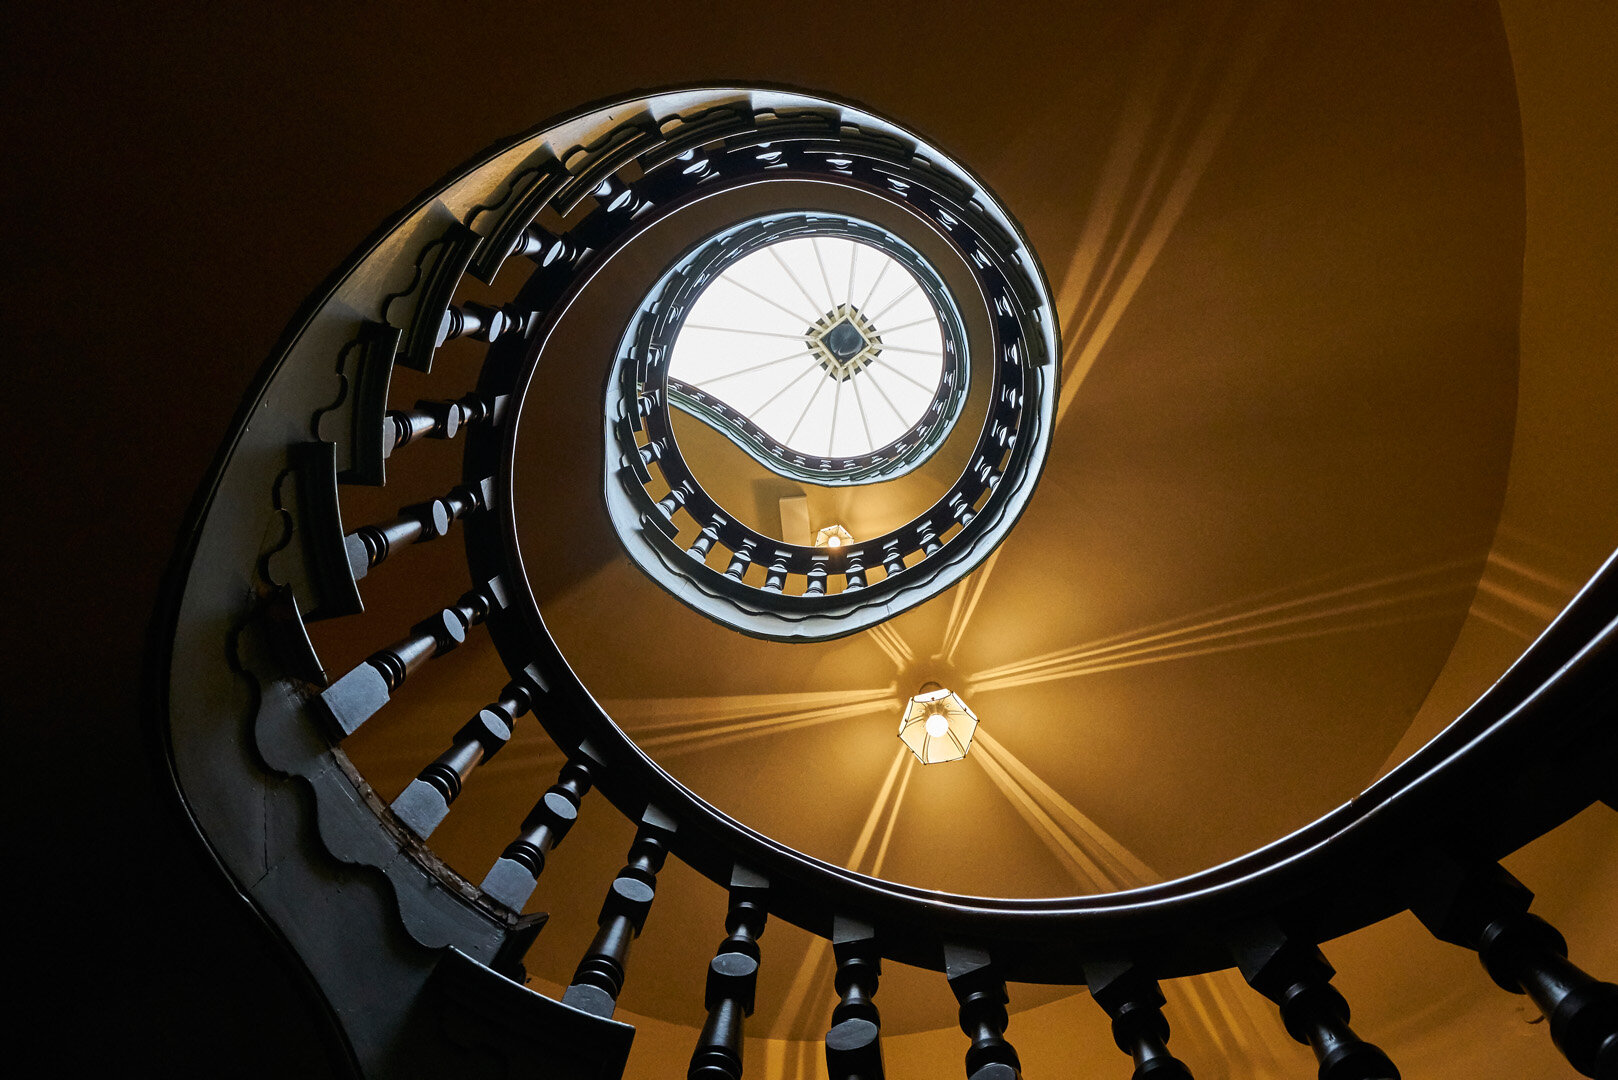 Dunedin stairwell